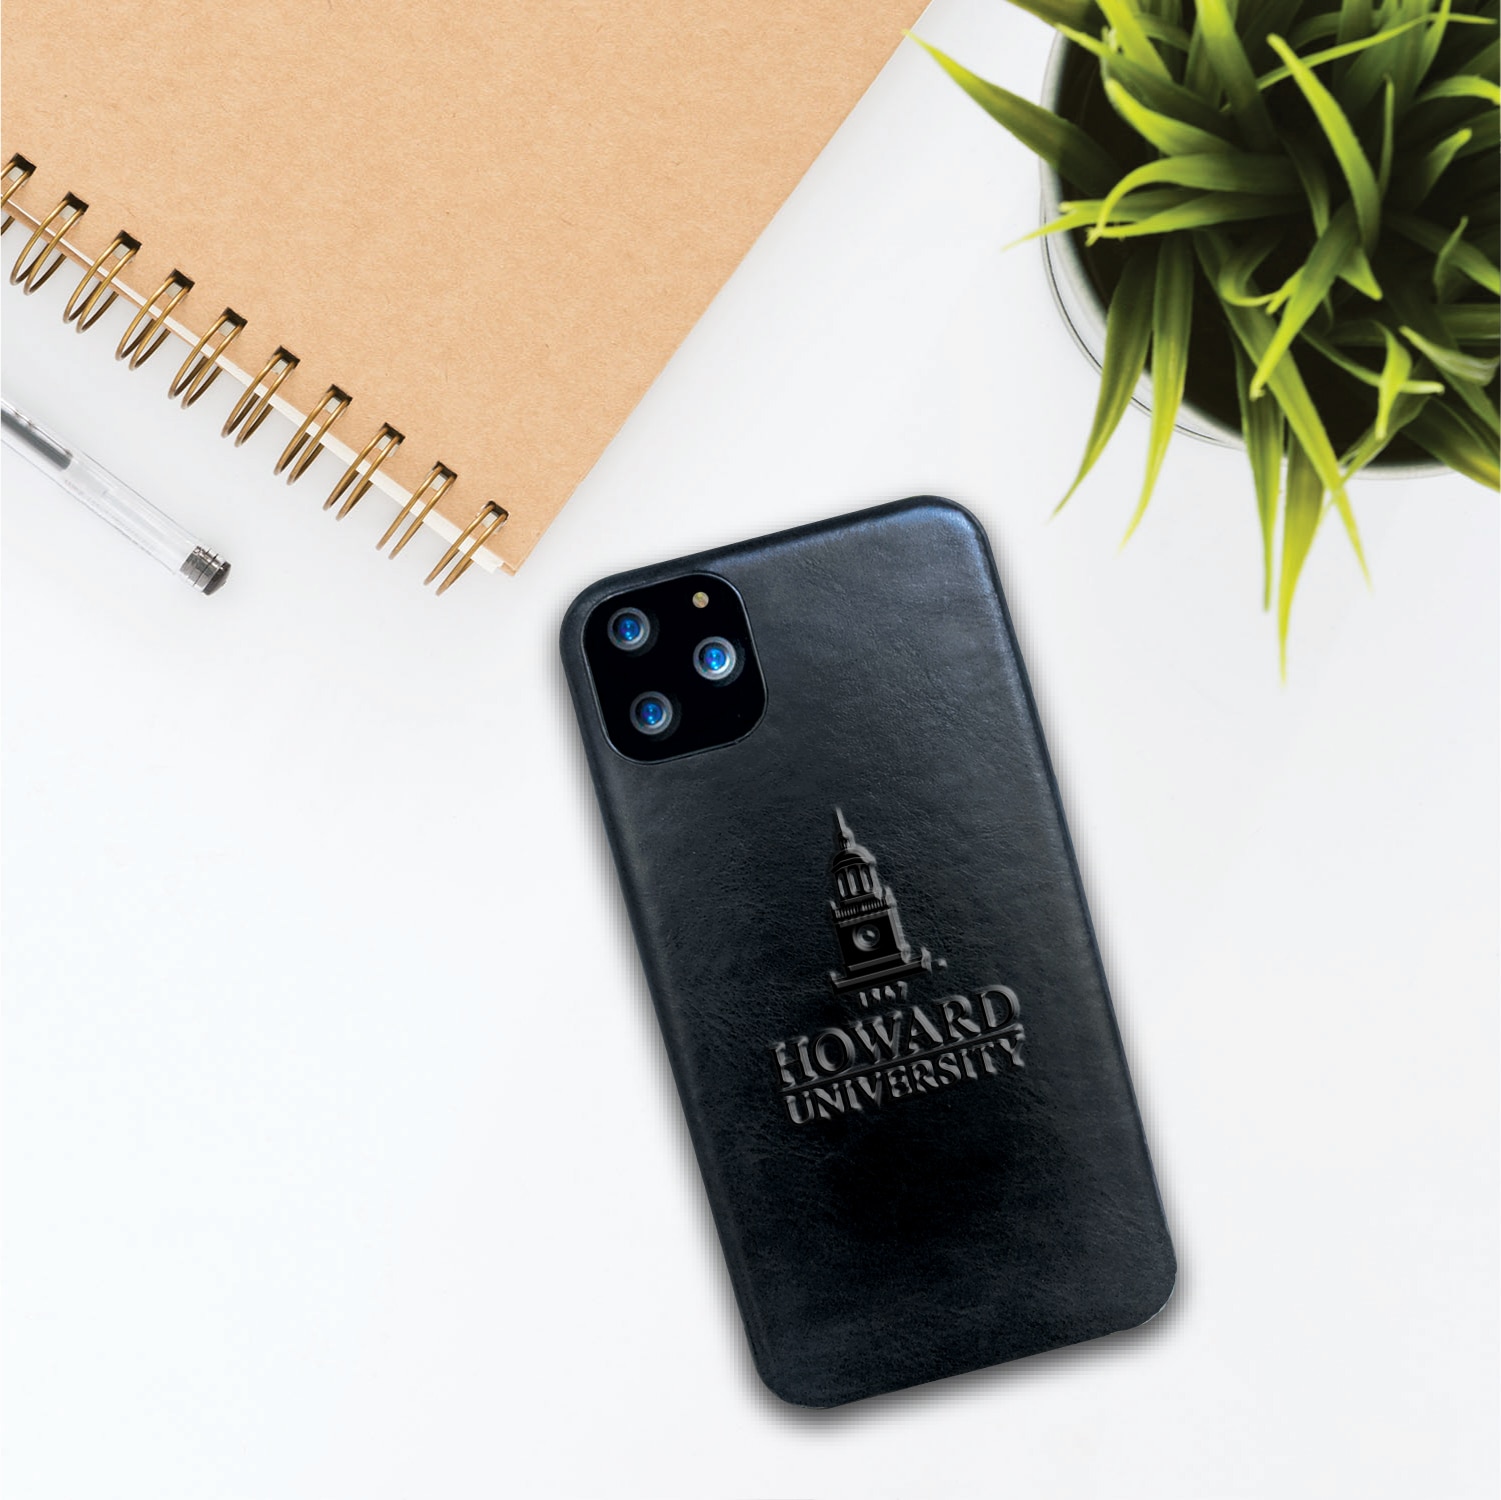 Howard University Leather Shell Phone Case, Black, Alumni V2 - iPhone 13